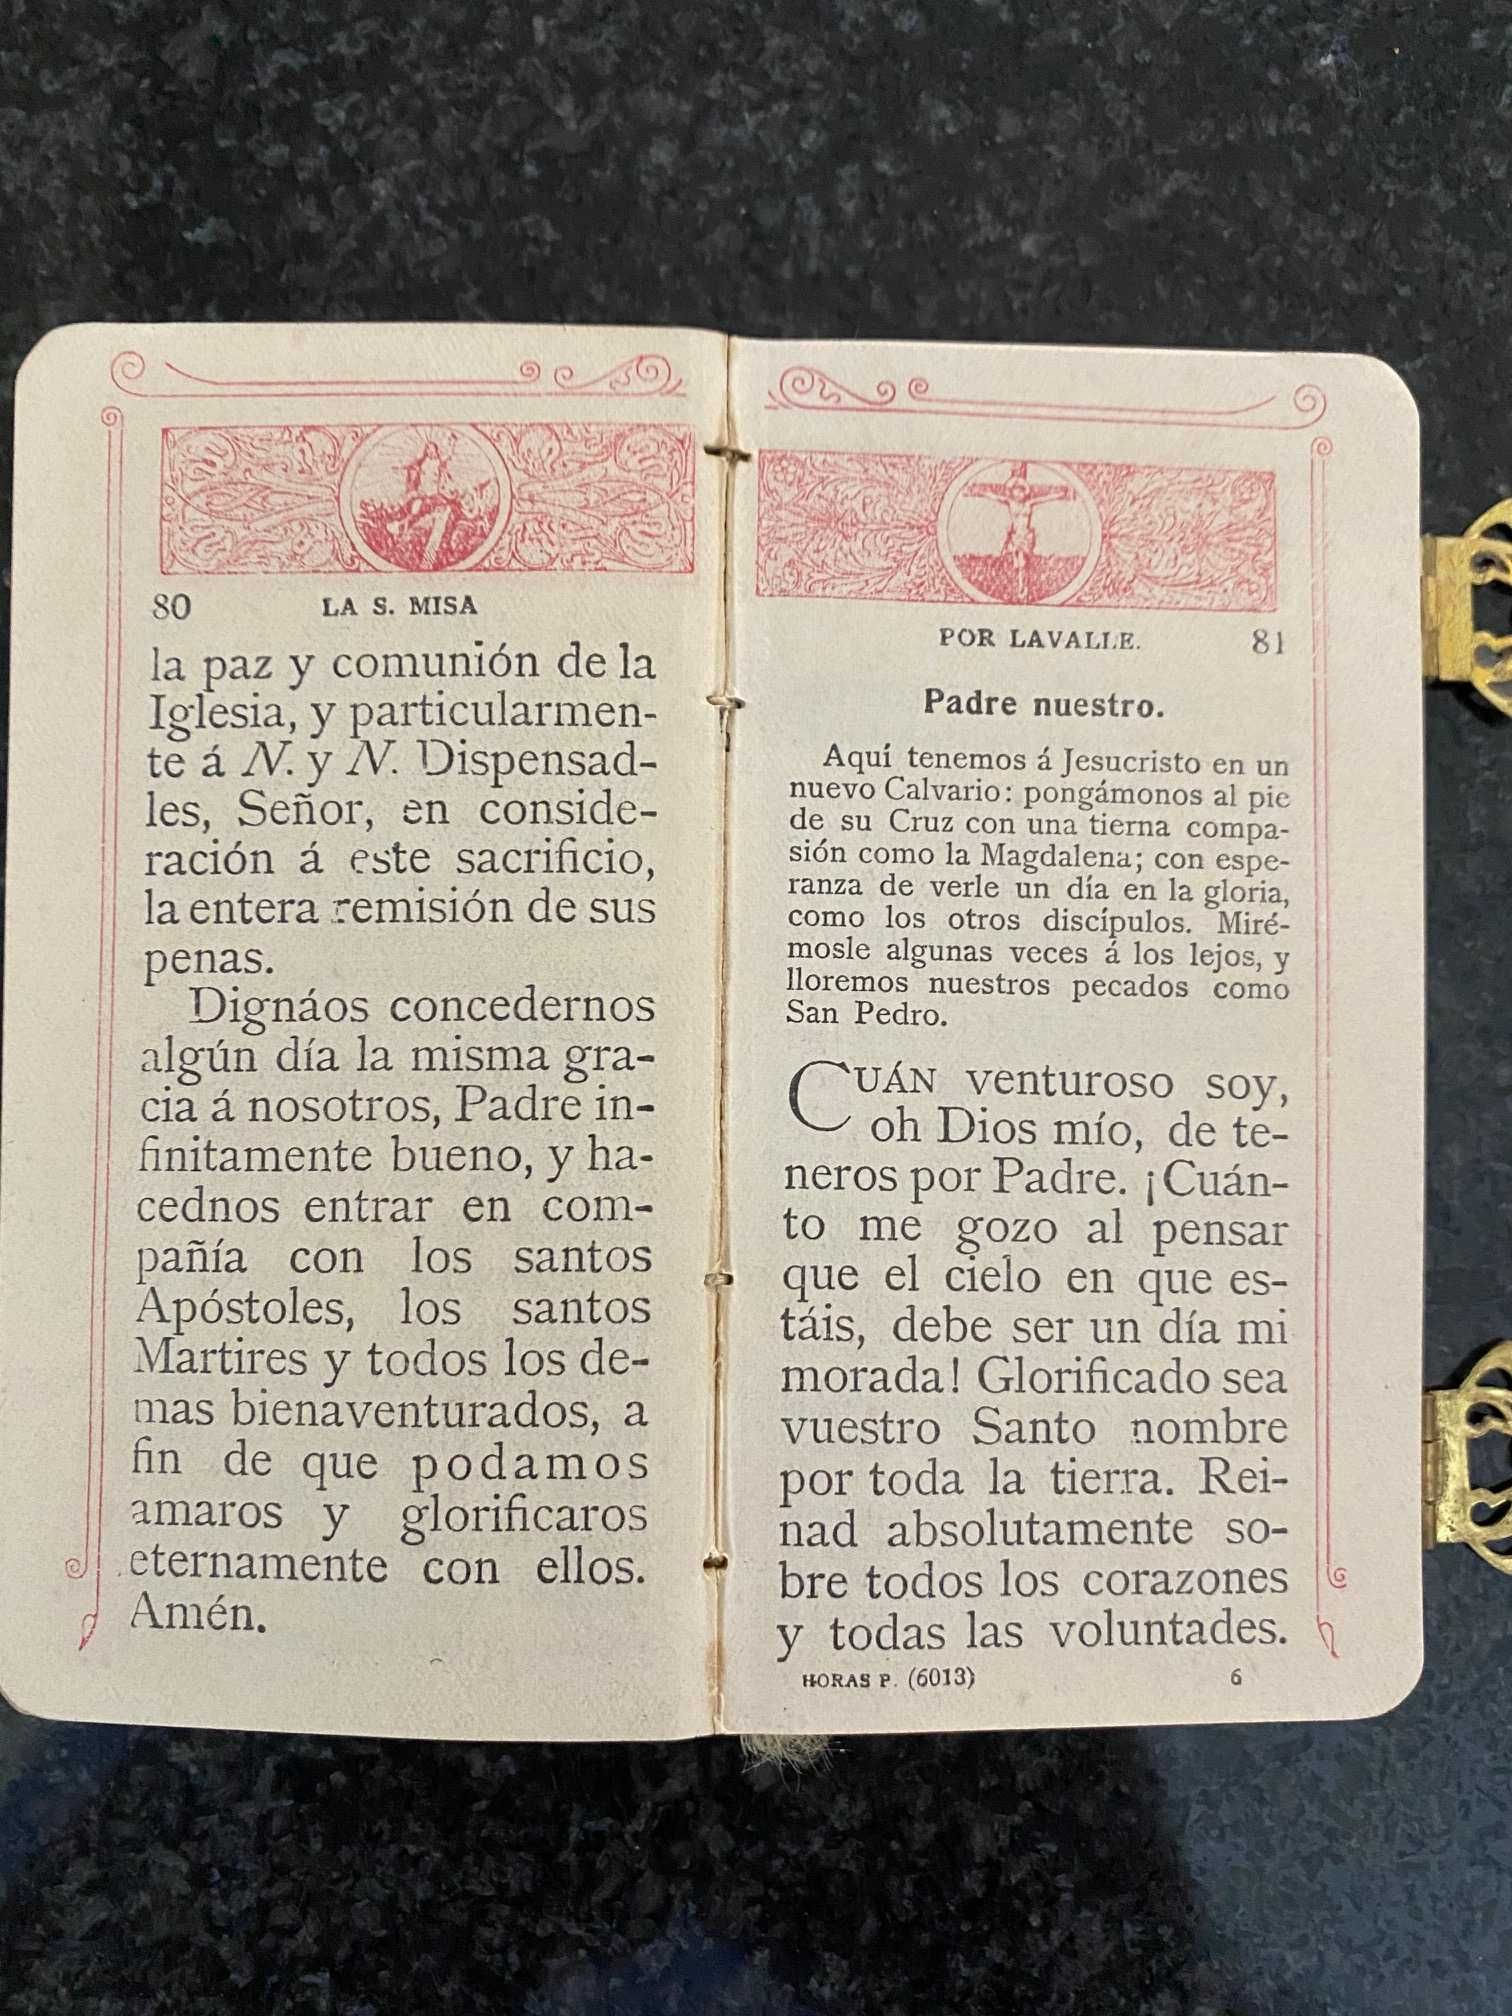 Livro de Orações antigo e raro